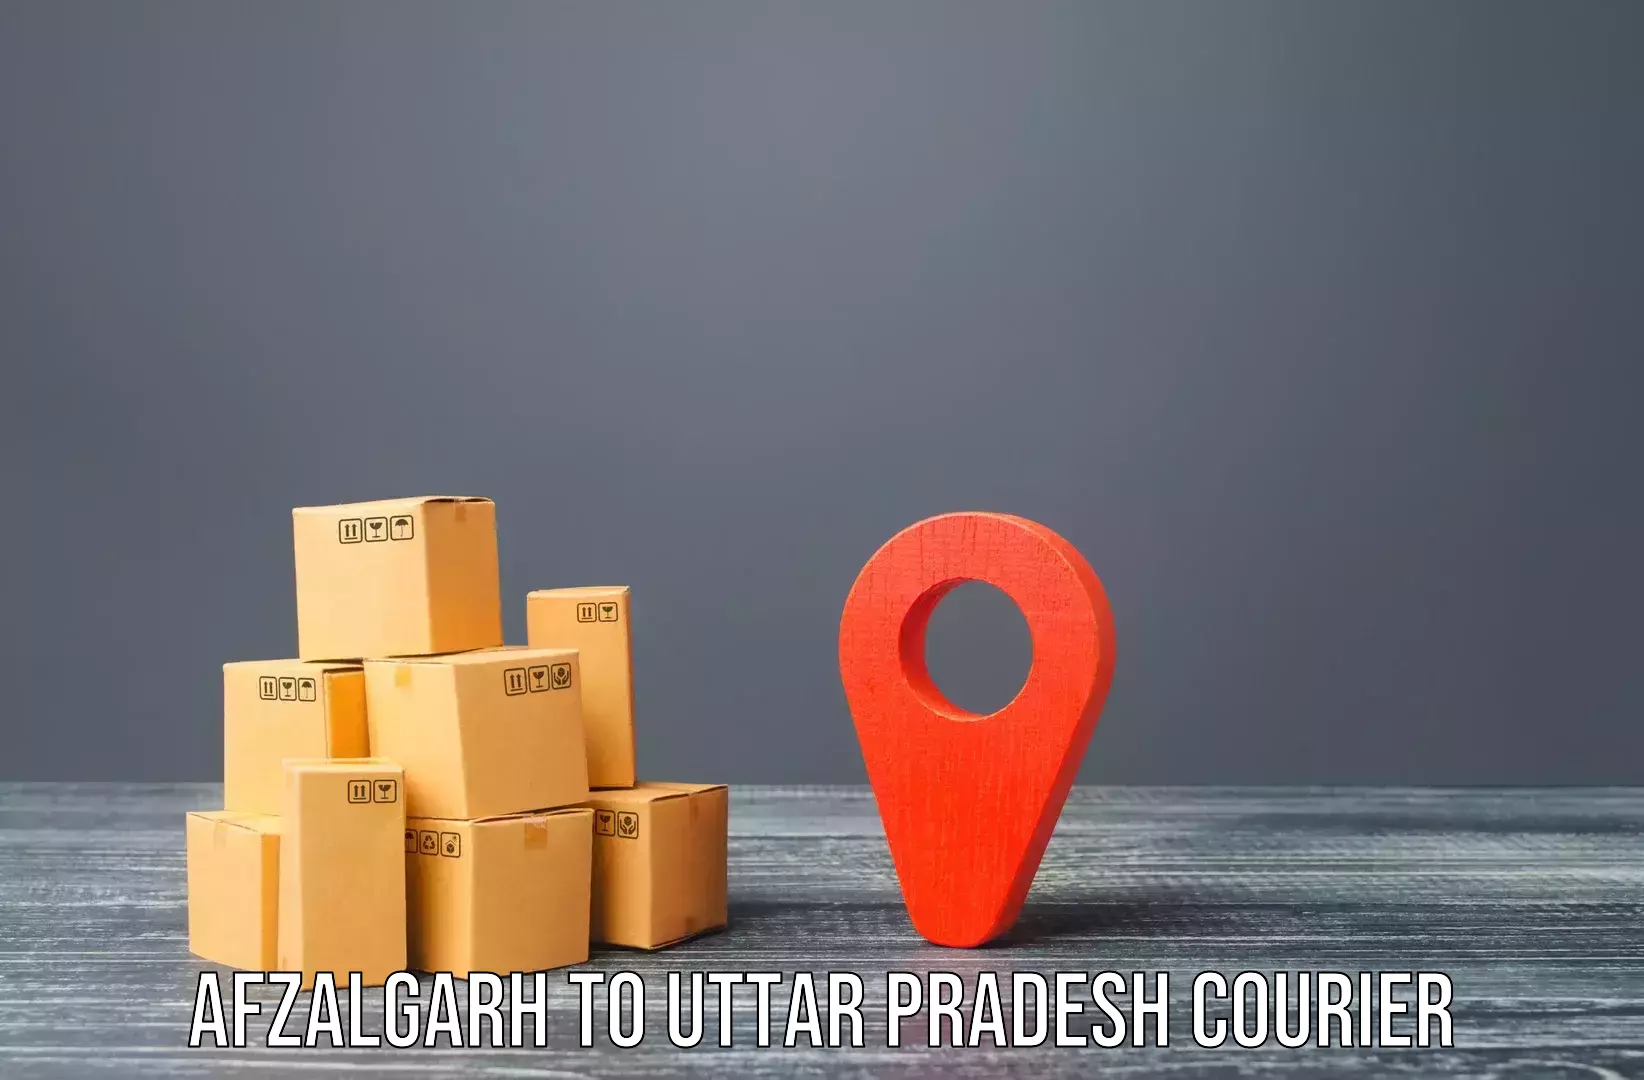 Efficient relocation services Afzalgarh to Mehnajpur